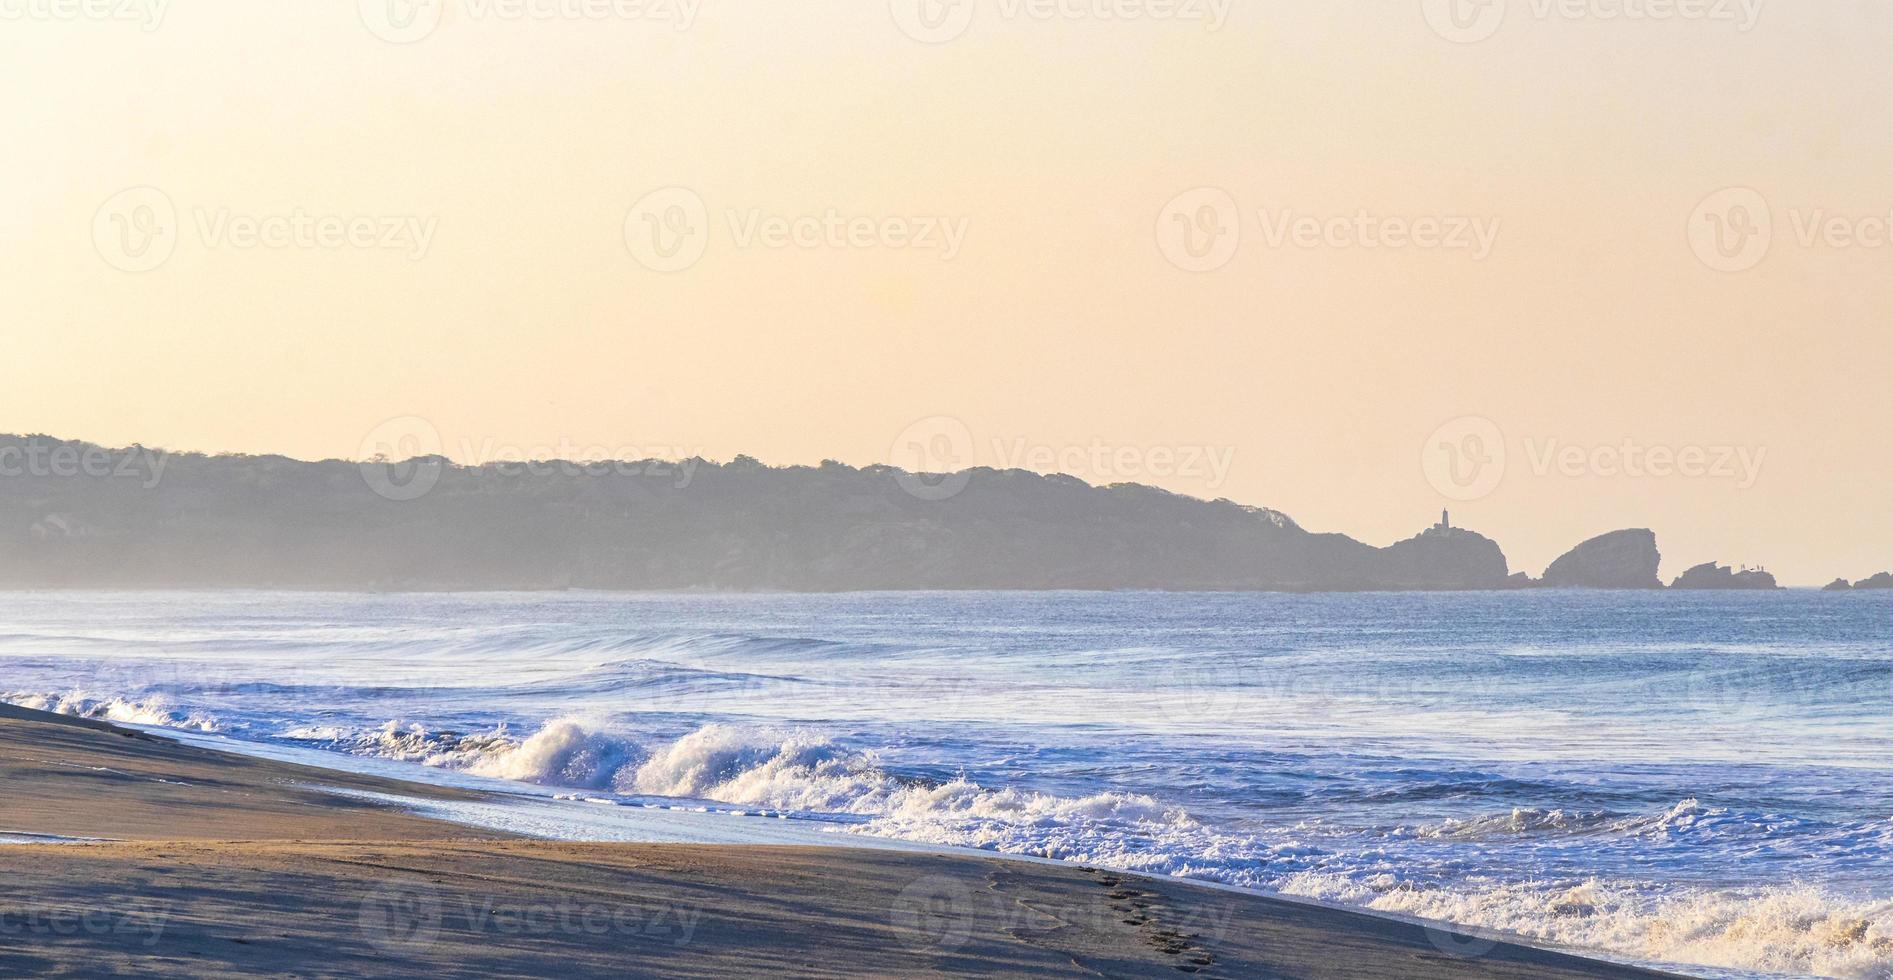 Extremely huge big surfer waves beach La Punta Zicatela Mexico. photo